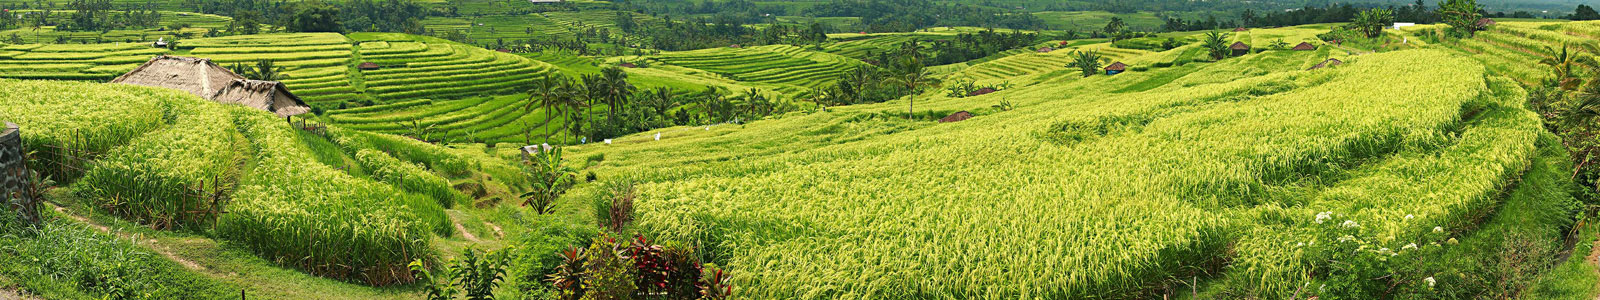 №4424 - Рисовые поля Джатилувих на о.Бали - Всемирное наследие ЮНЕСКО